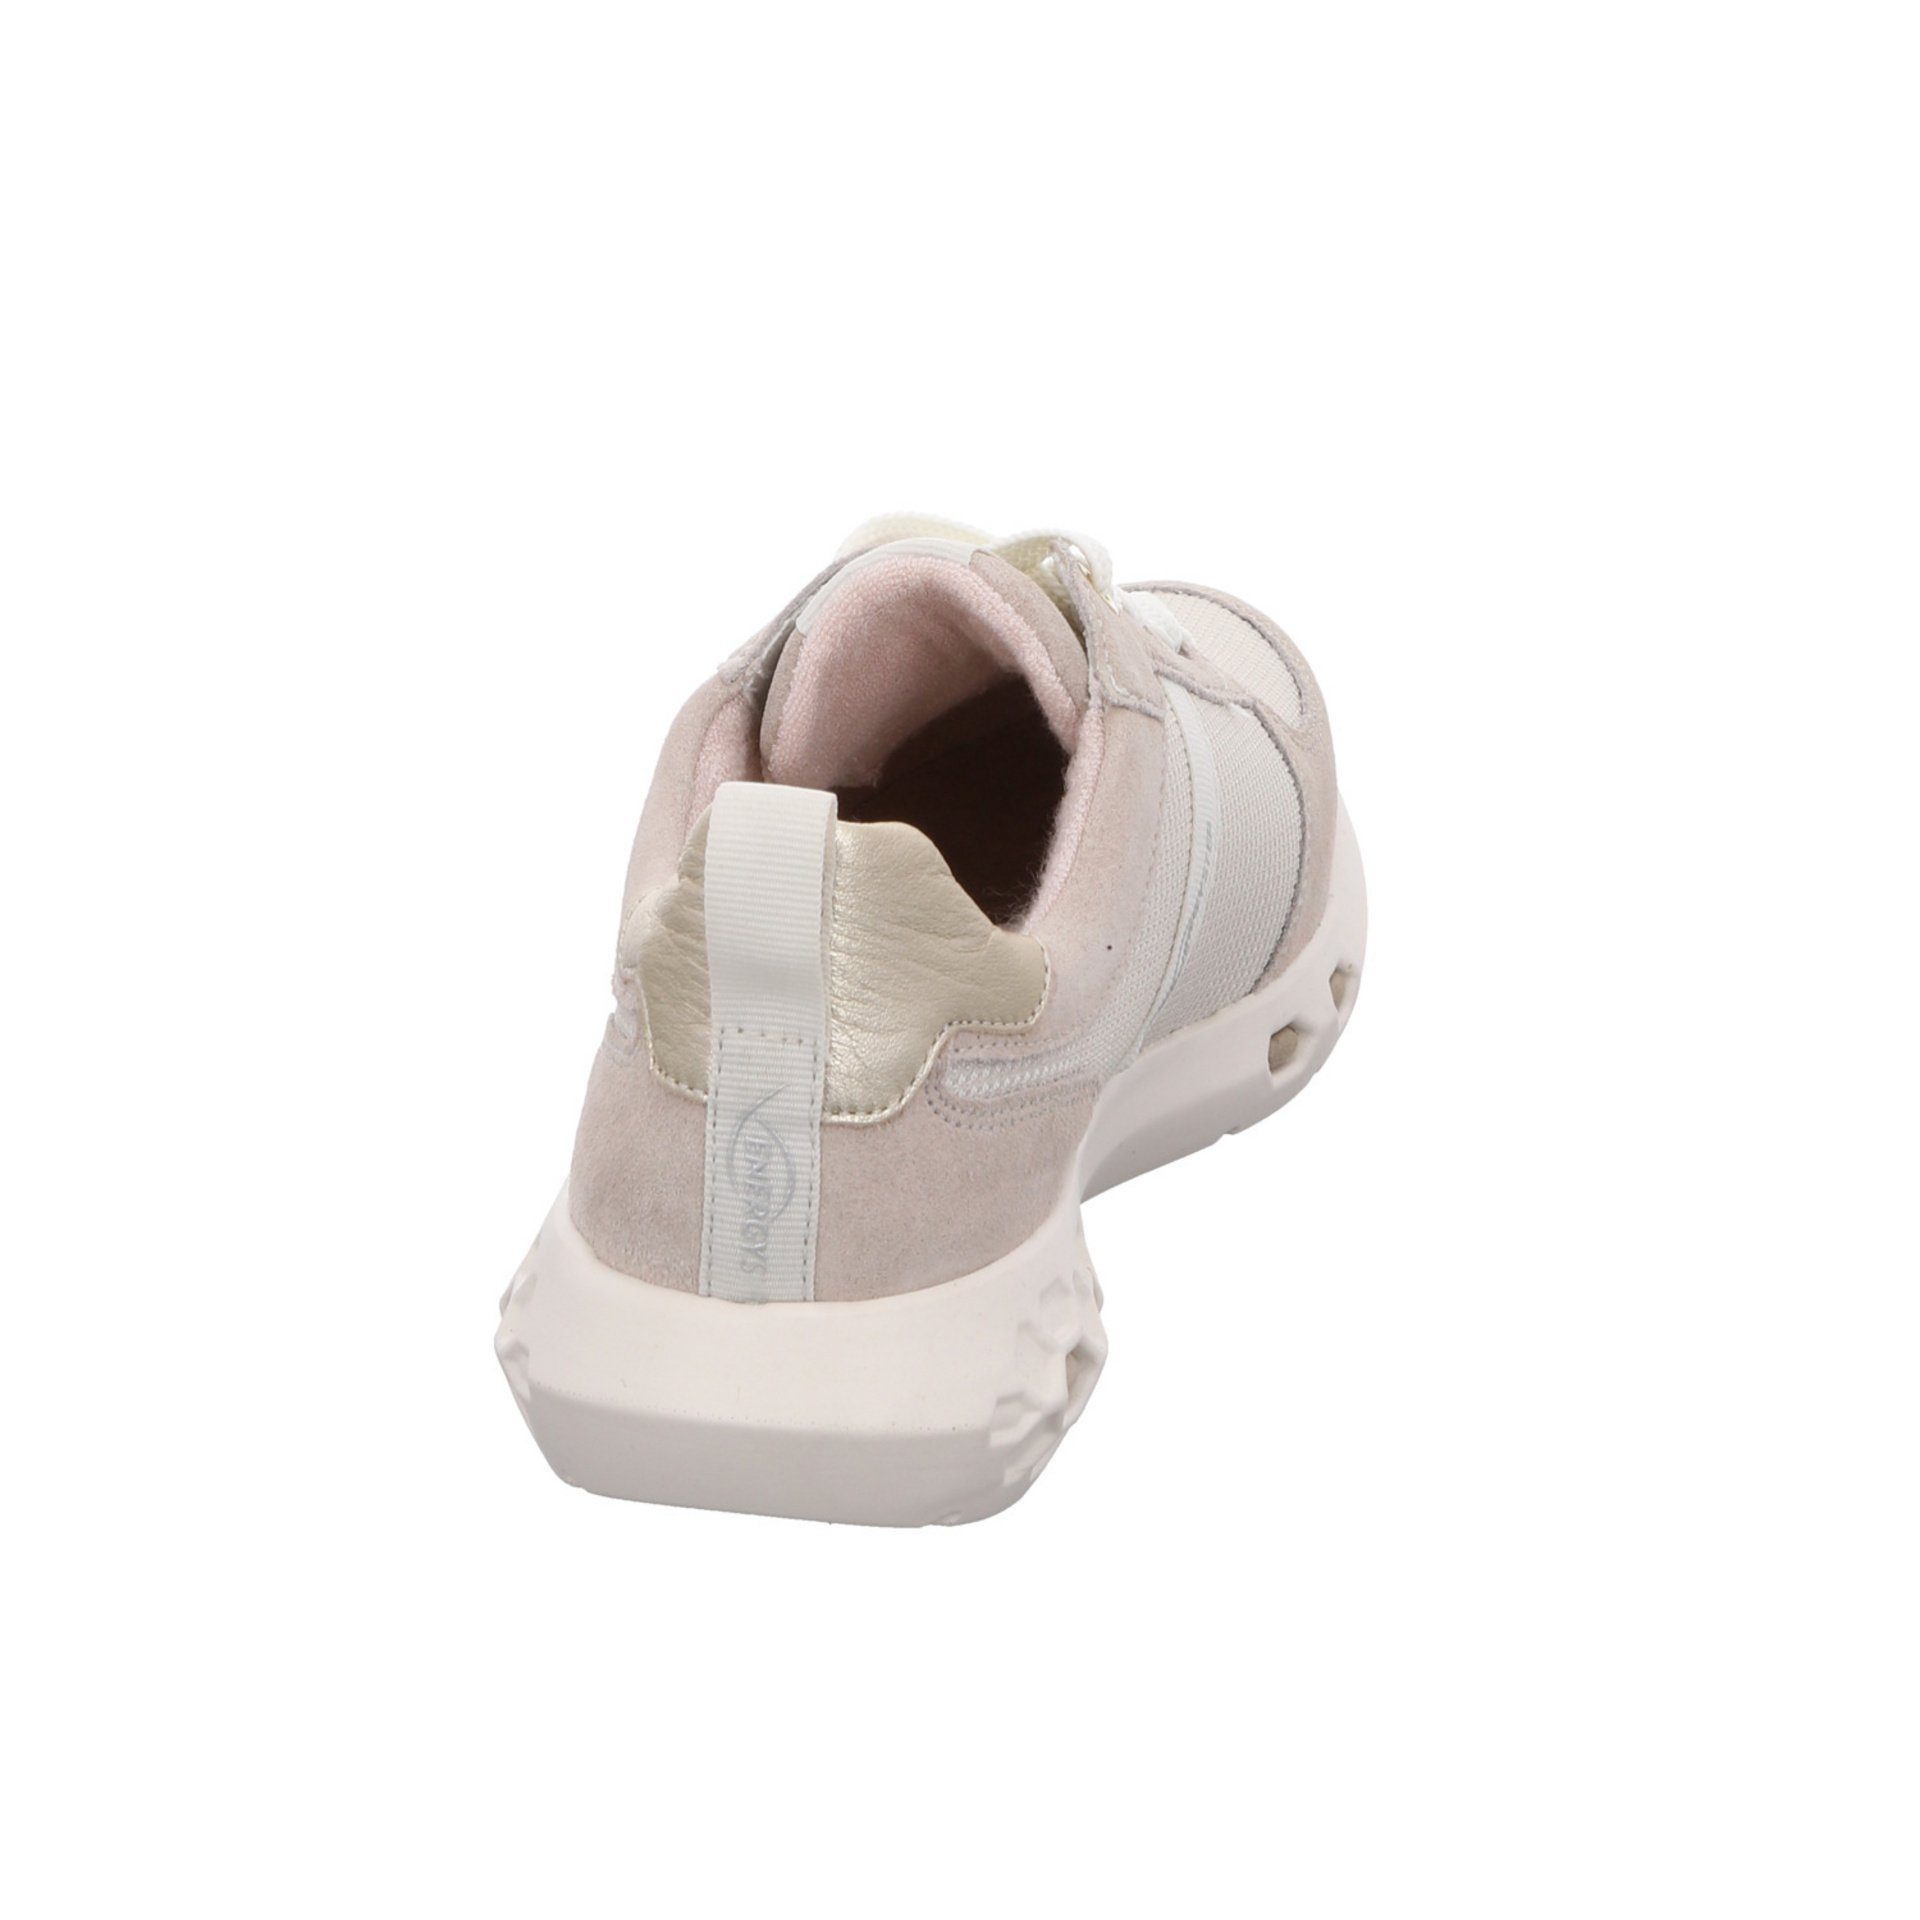 Schnürhalbschuhe Schnürschuh Cream 2.0 Jumper Damen Leder-/Textilkombination Sneaker Ara